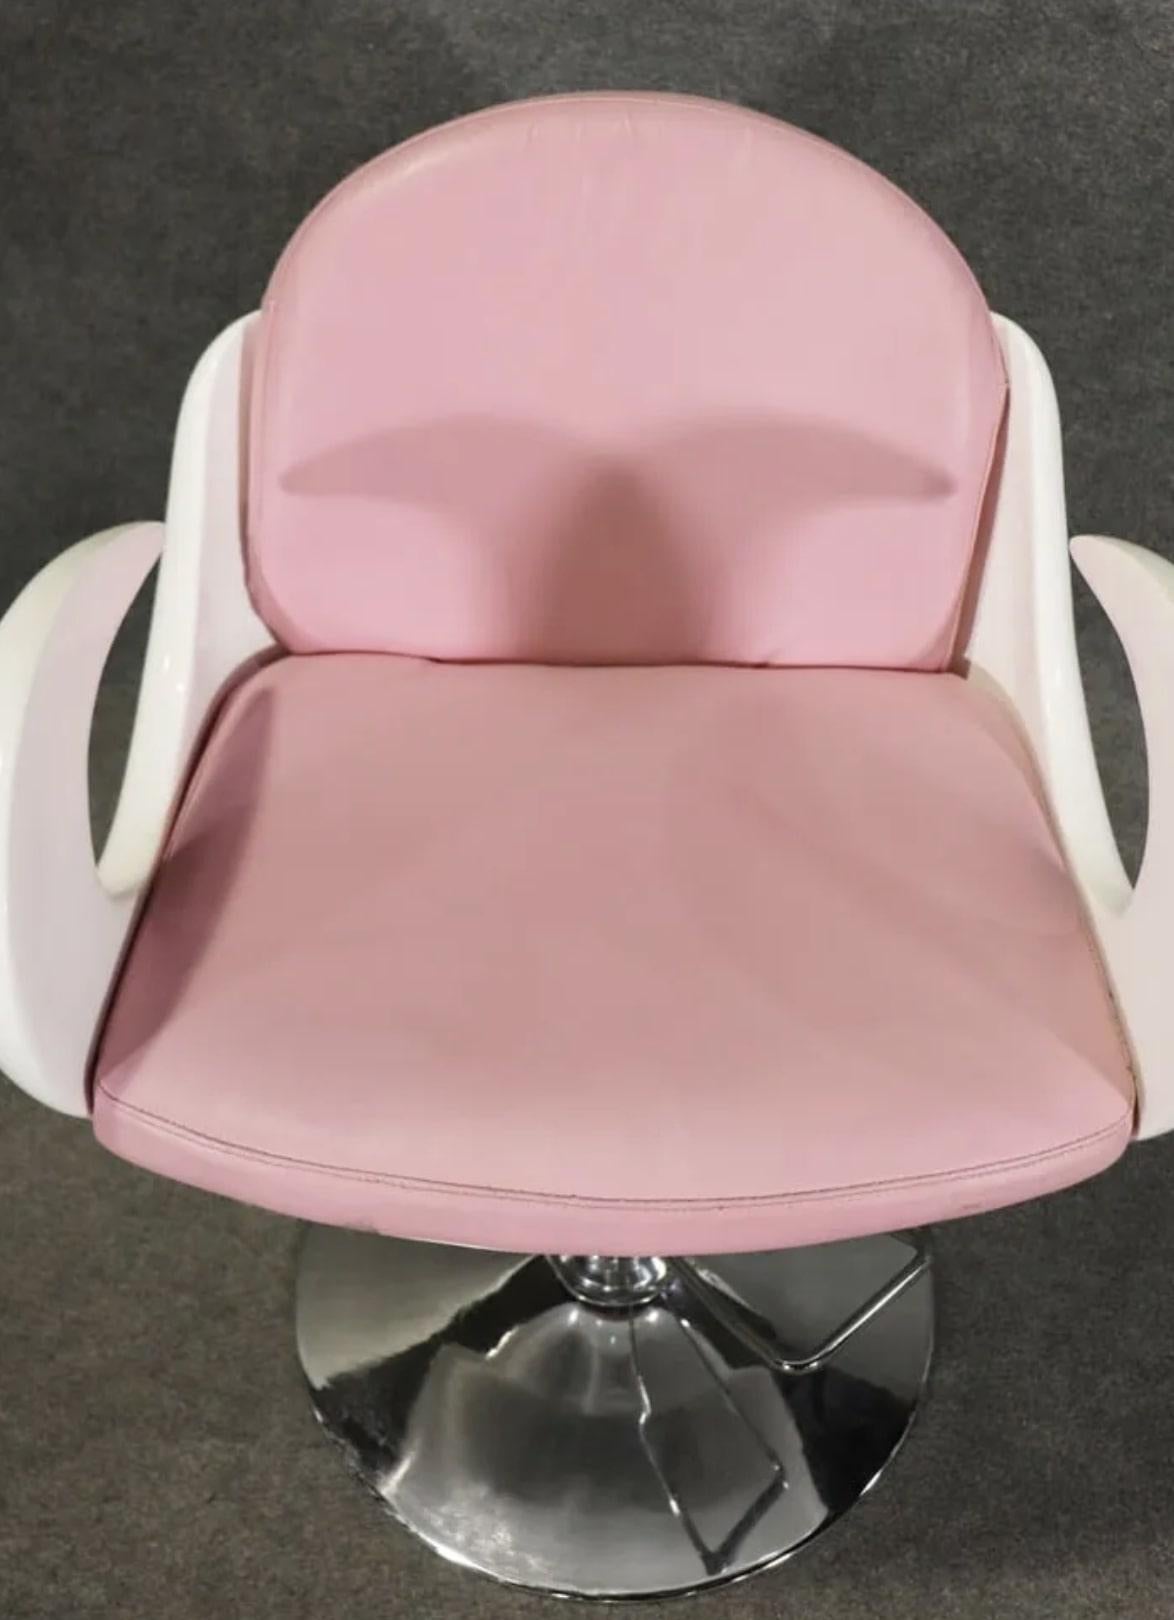 Seltener Friseurstuhl von Carven mit geschwungenen Armlehnen und rosa Sitzfläche.
Bitte bestätigen Sie den Standort NY oder NJ